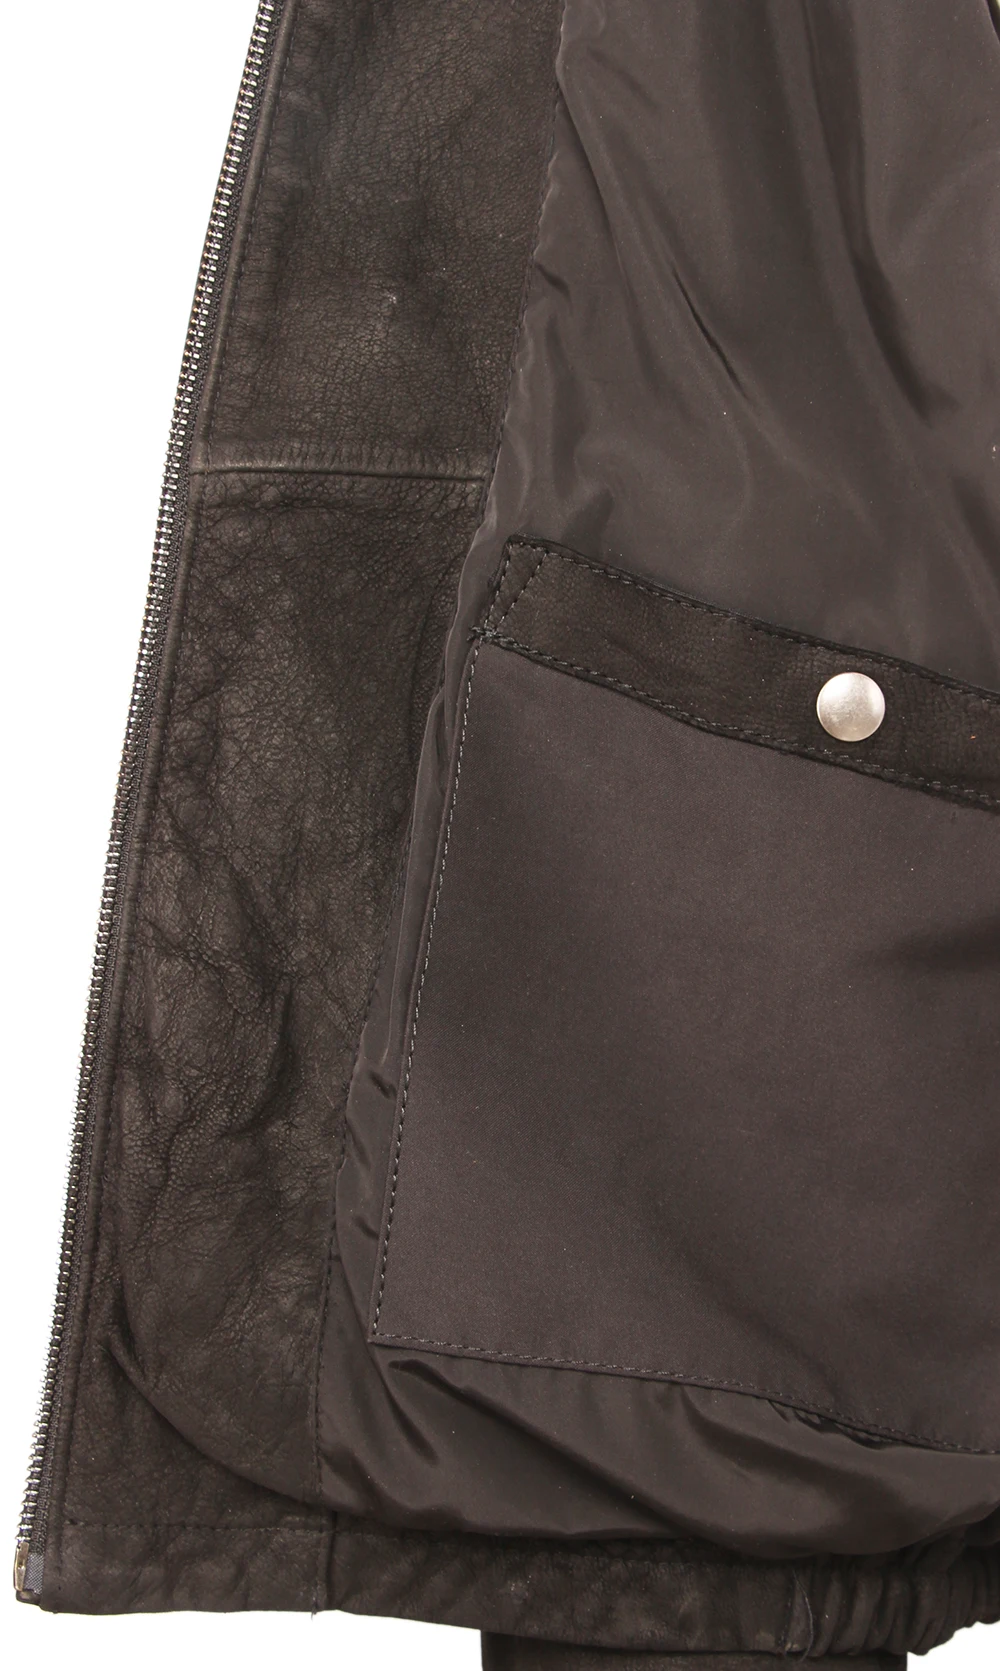 Черная мужская куртка из натуральной кожи куртки из матовой кожи Натуральная воловья кожа Бомбер мужской кожаный плащ Одежда Осень M460